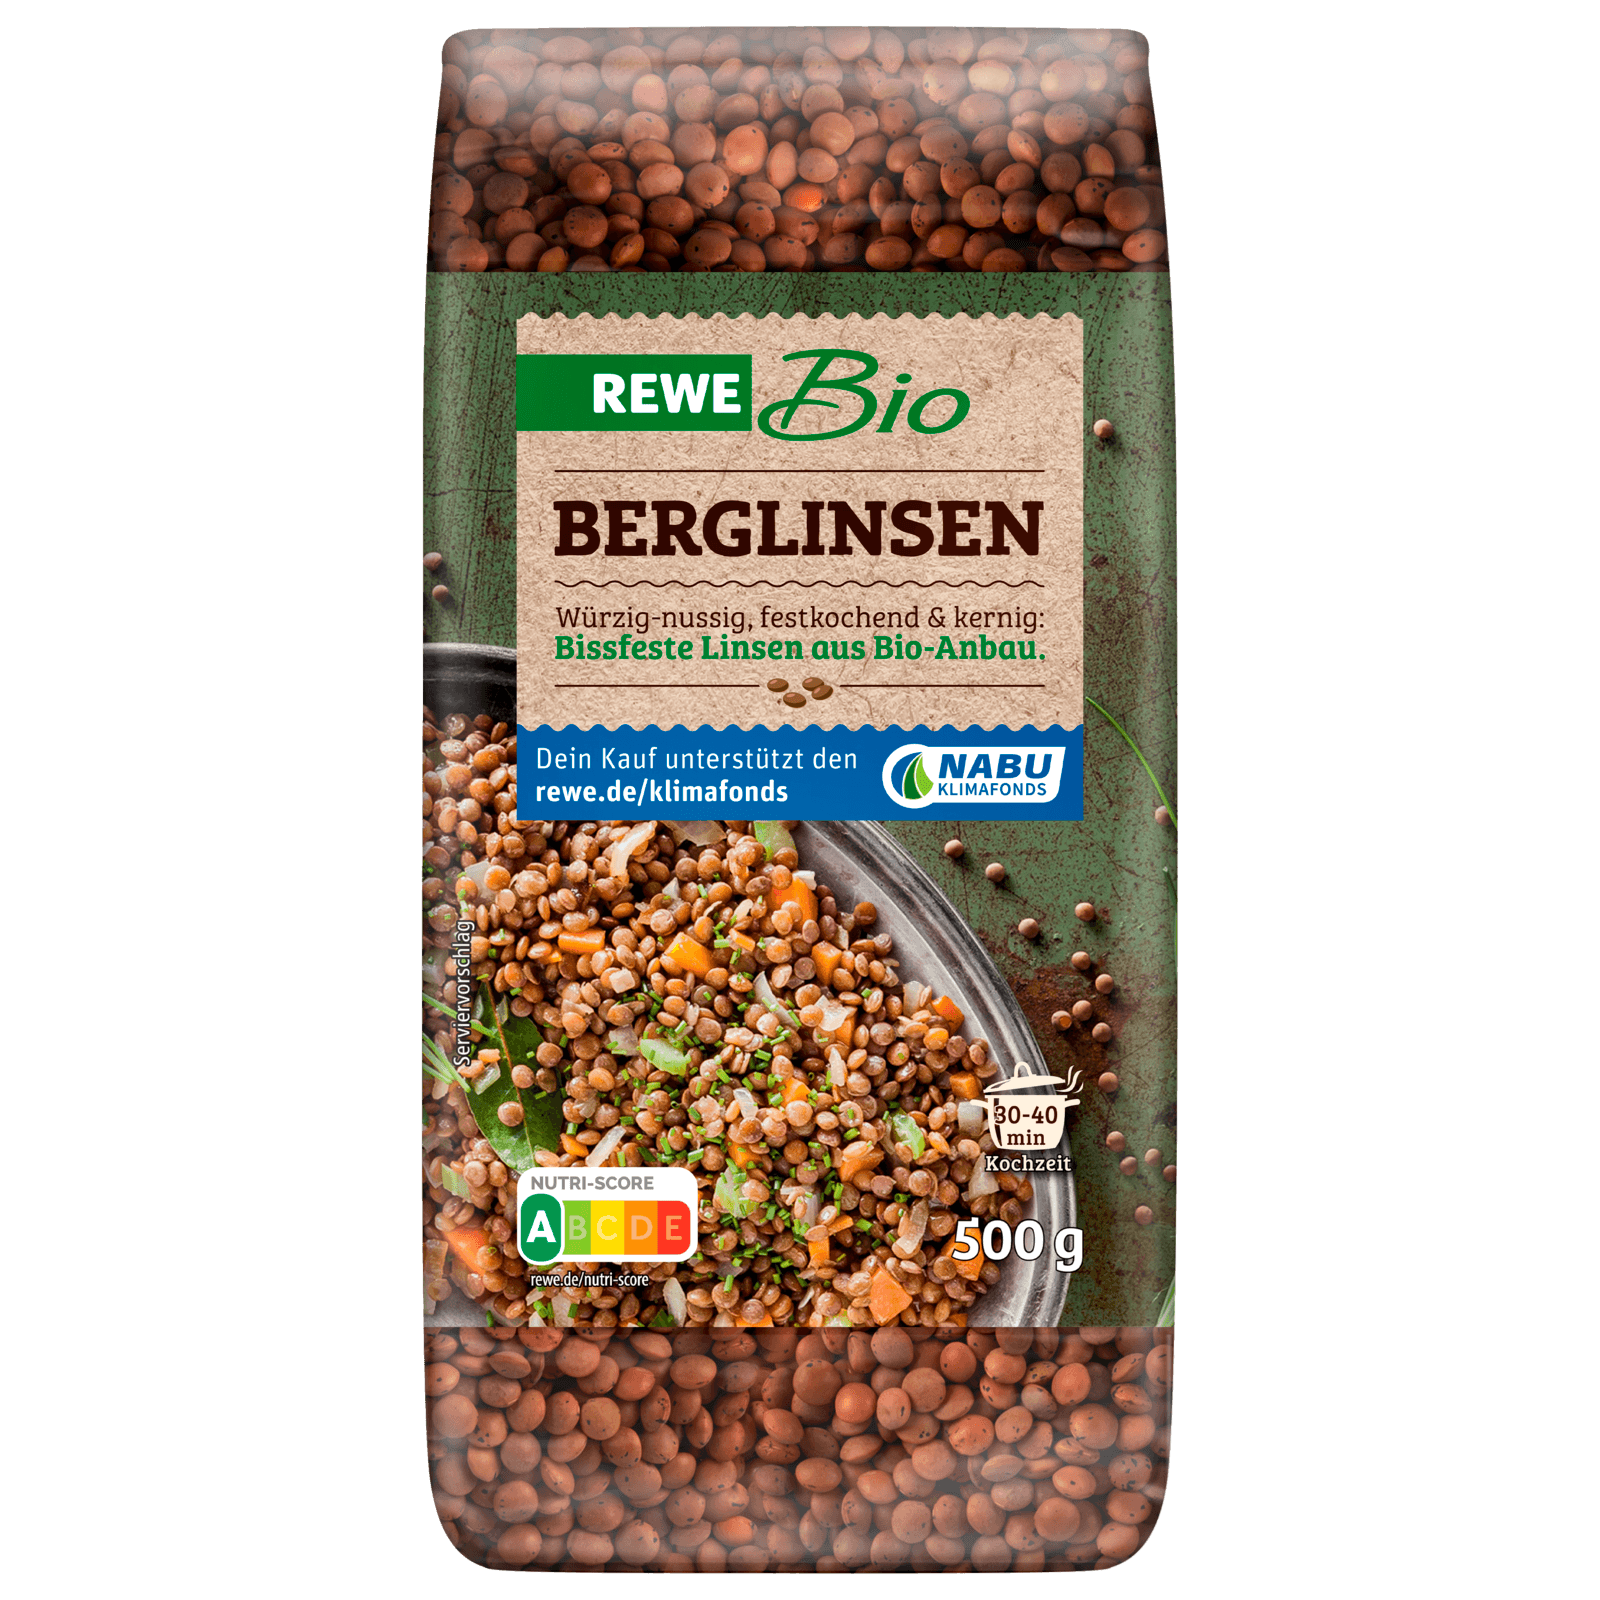 REWE Bio Berglinsen 500g